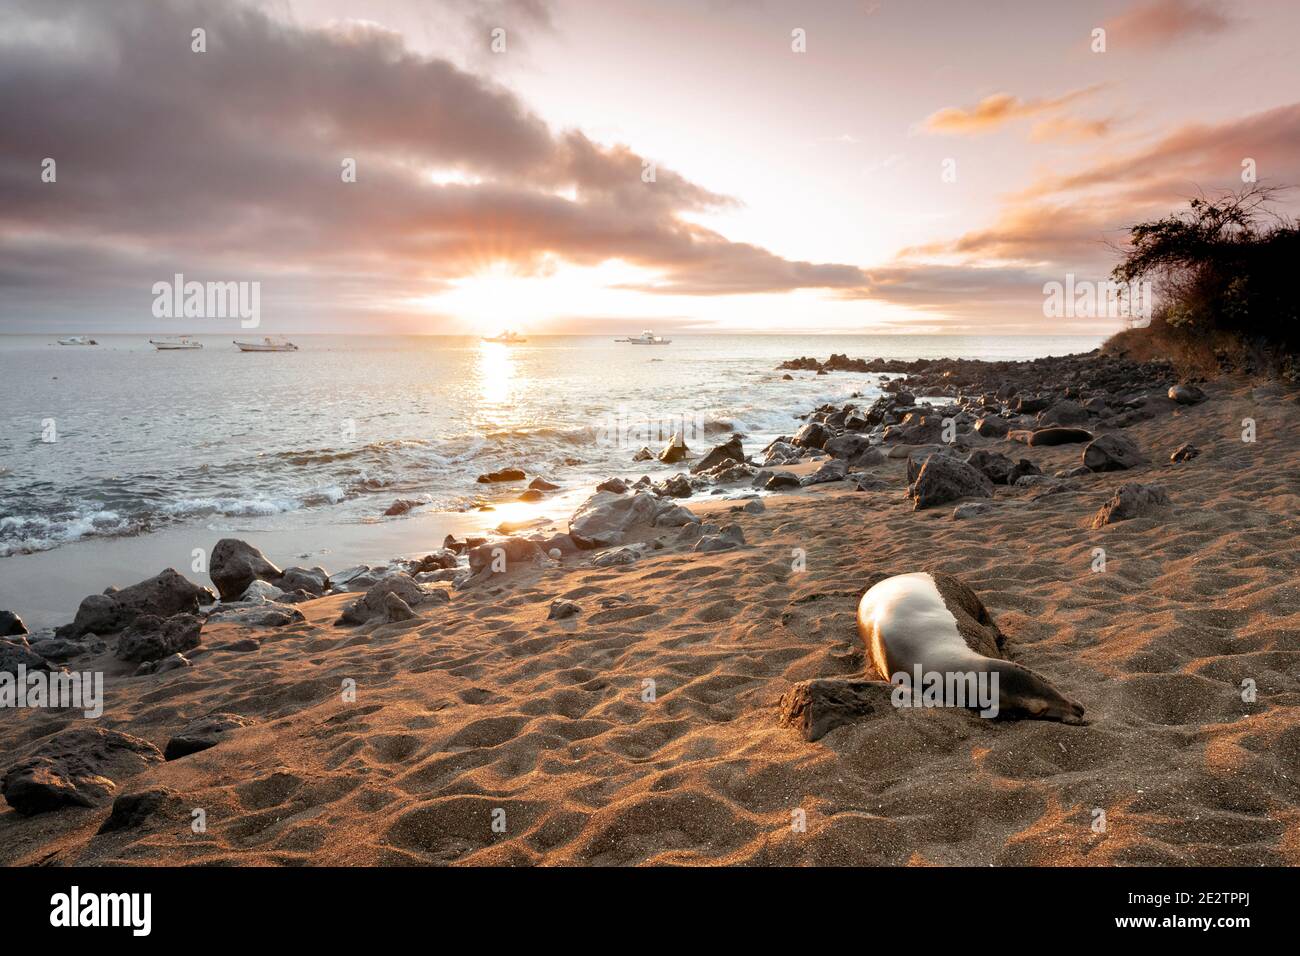 Galapagos Sea Lion dort sur une plage au coucher du soleil sur l'île Floreana, îles Galapagos Banque D'Images